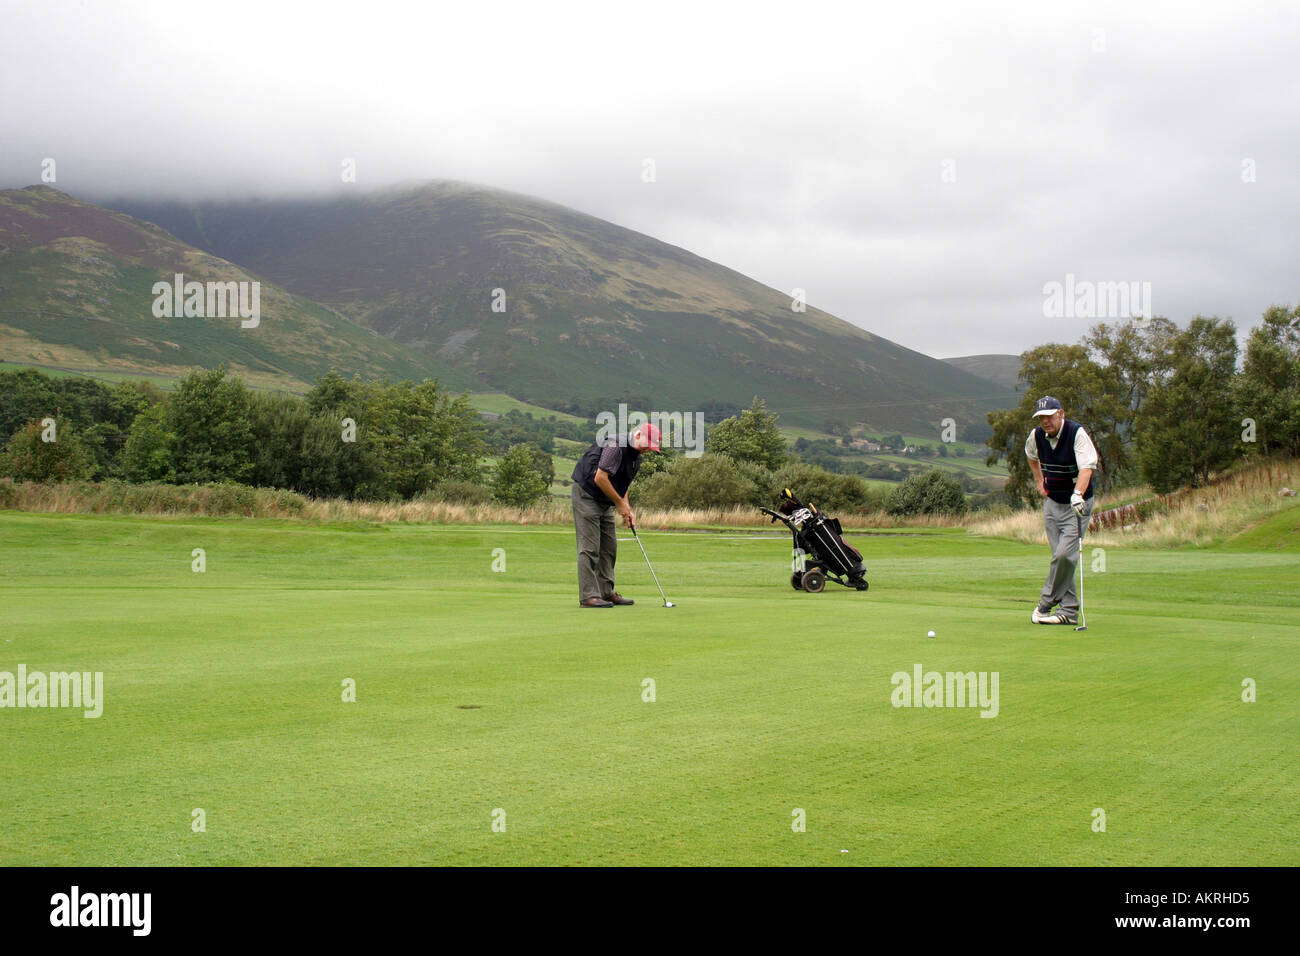 Deux golfeurs sur le parcours ouvert avec les montagnes en arrière-plan Banque D'Images